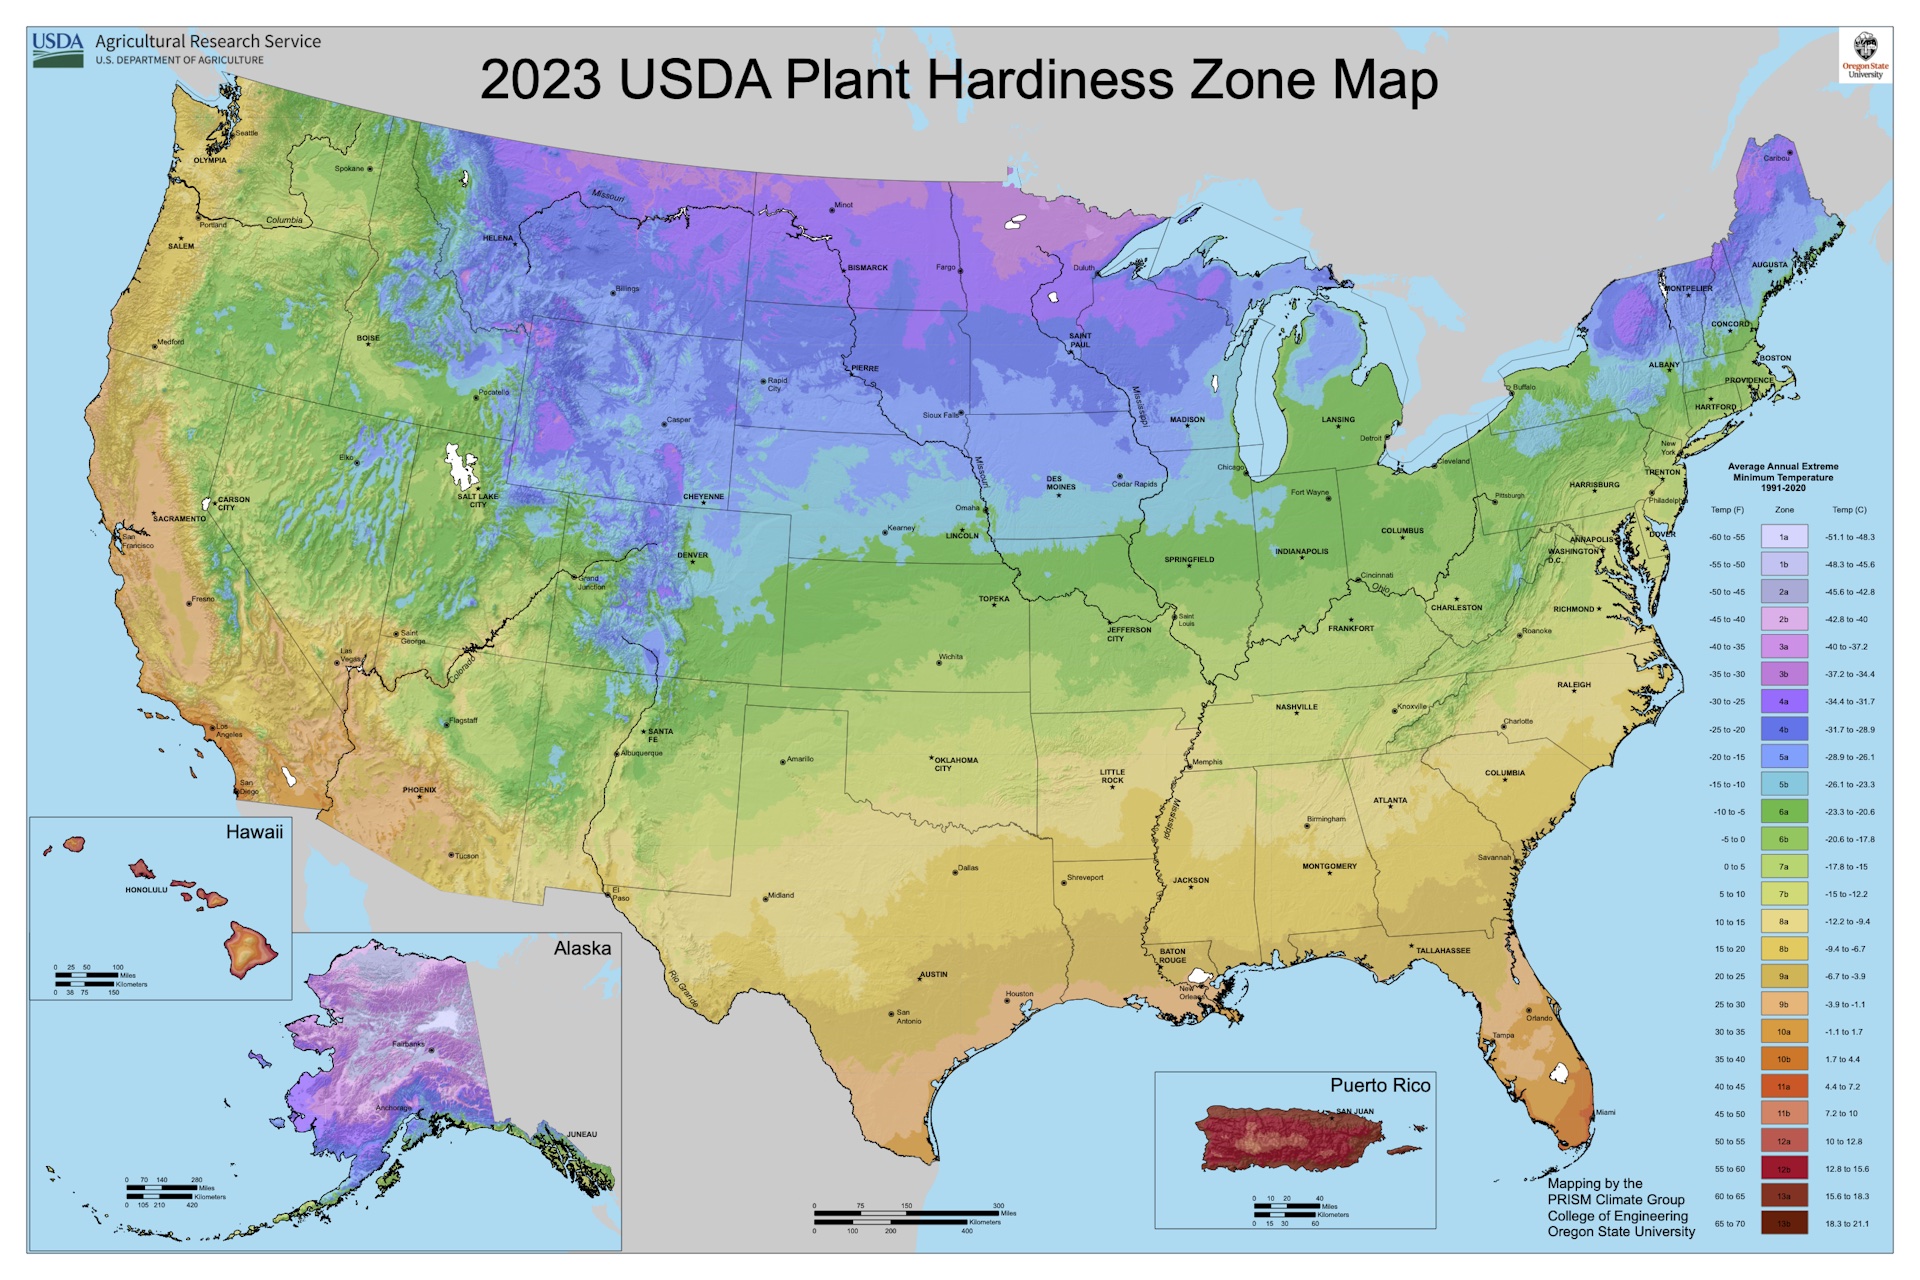 2023 usda plant hardiness zone map of the united states.